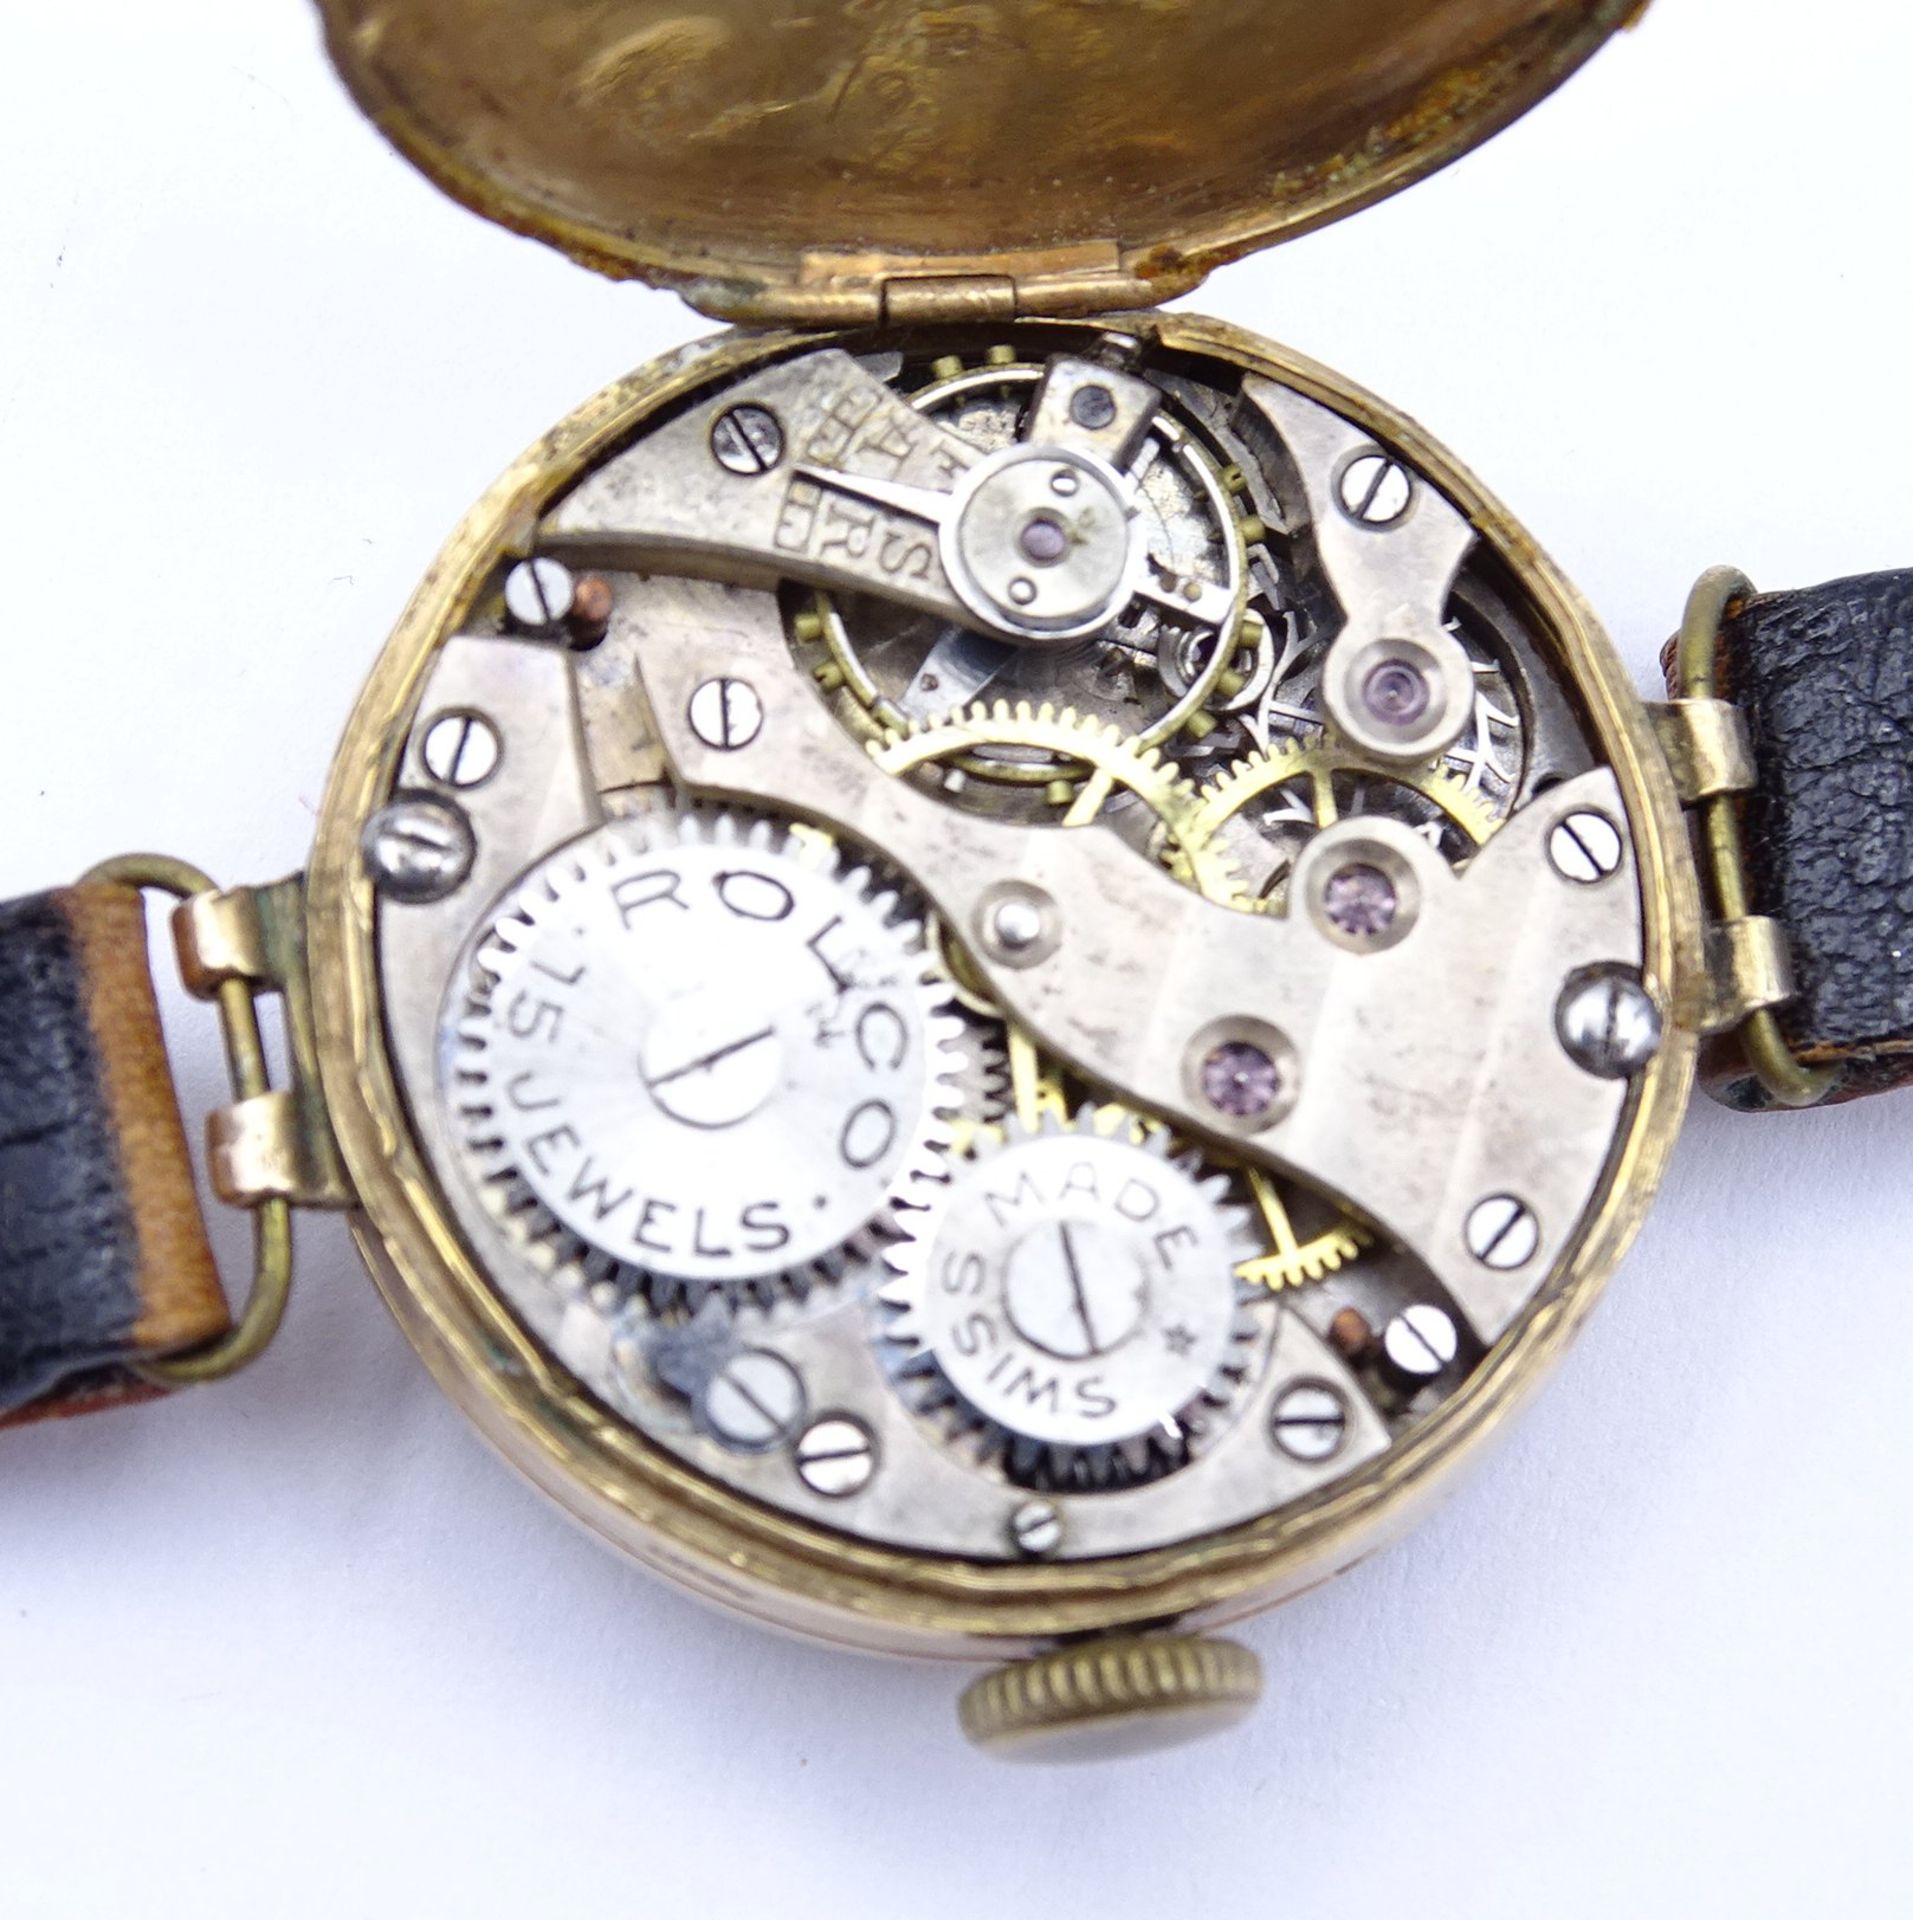 Armbanduhr "Rolex" Mod. Rolco, GG Gehäuse 375/000, mechanisch, Werk läuft für einige Minuten, D. 25 - Bild 7 aus 14